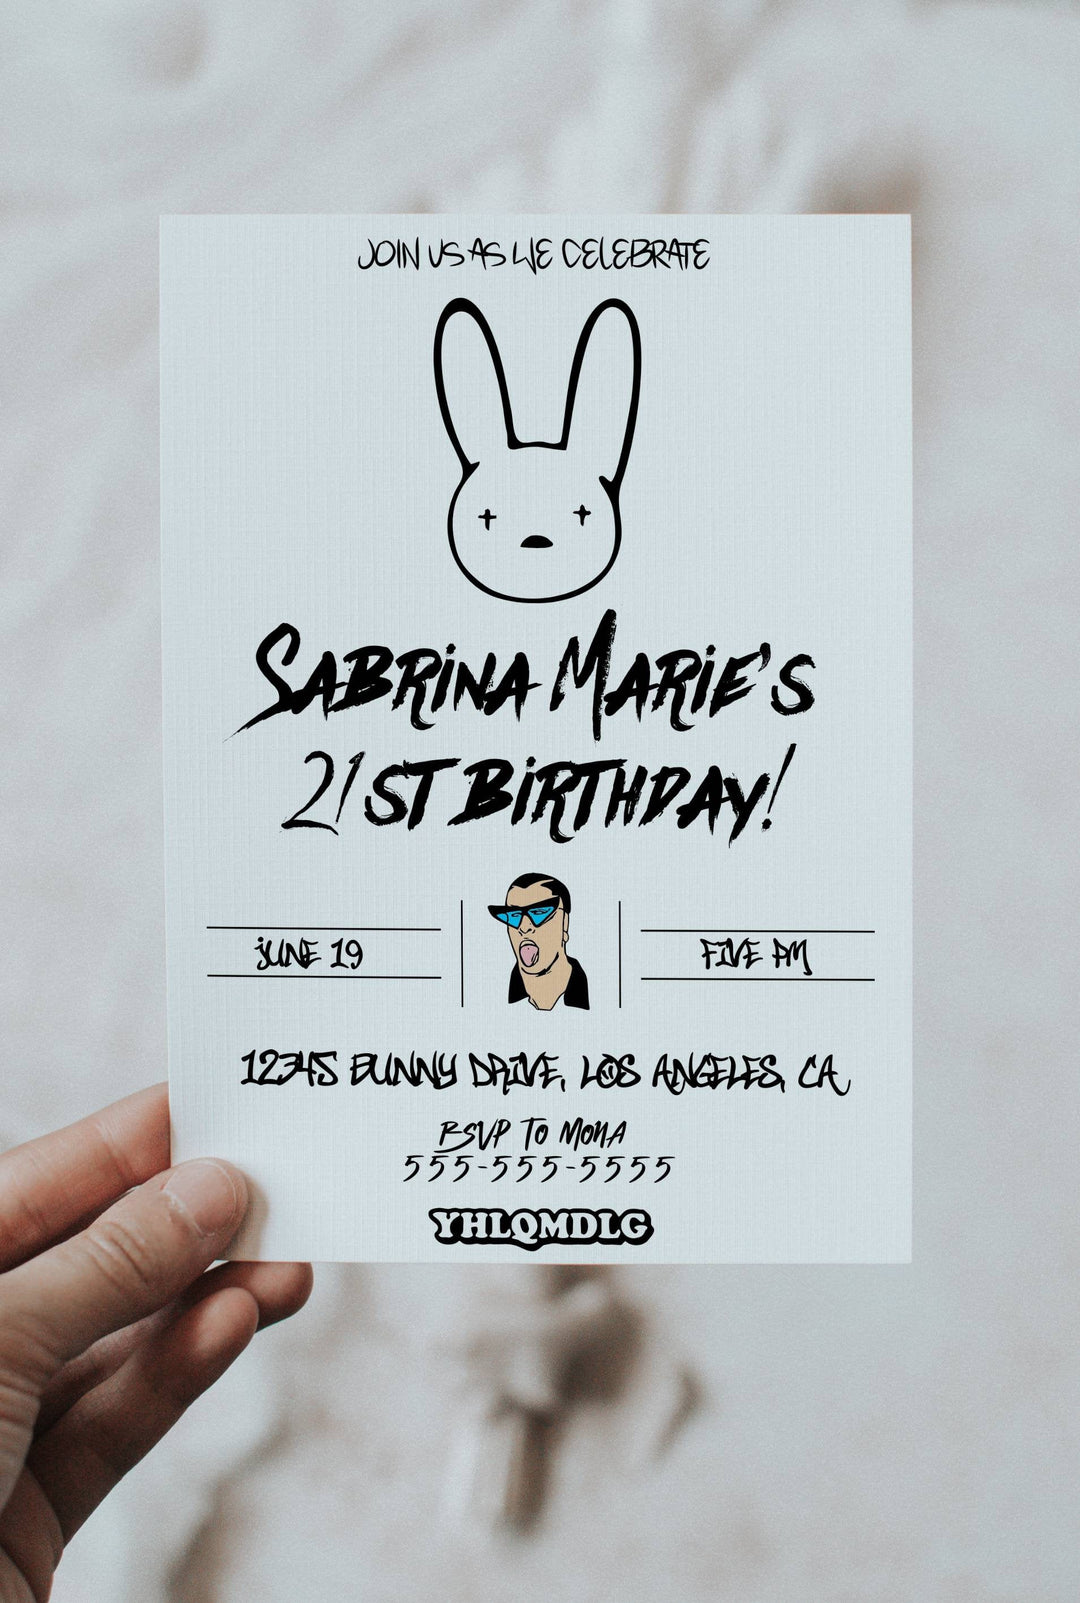 Bad Bunny Birthday Invitation - Bad Bunny Birthday Theme - YHLQMDLG Birthday Invitation - Invitación de cumpleaños de Bad Bunny - Bday Card